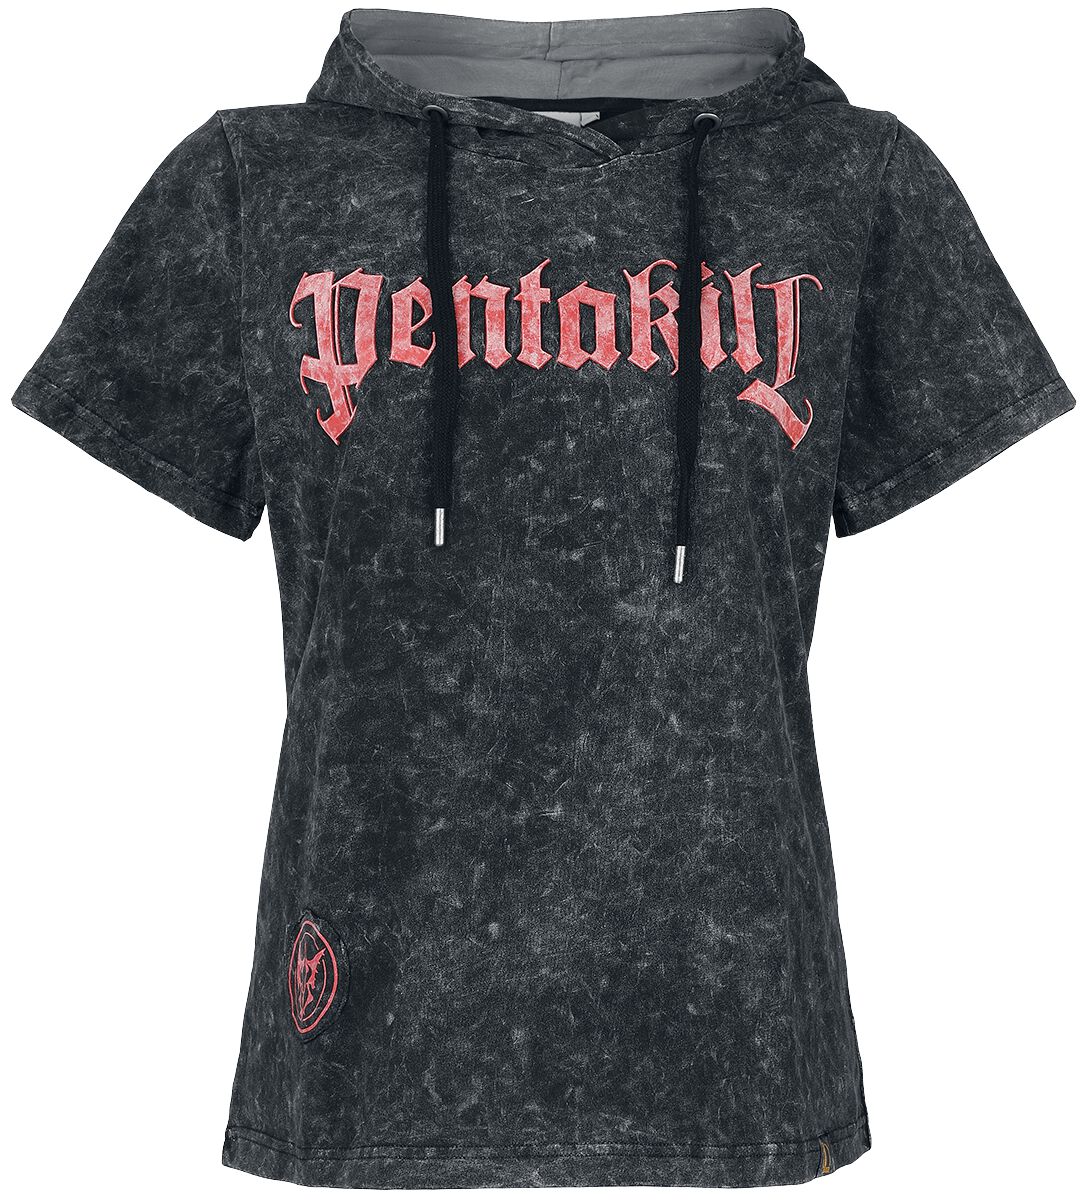 League Of Legends - Gaming T-Shirt - Pentakill - S - für Damen - Größe S - schwarz/grau  - EMP exklusives Merchandise!